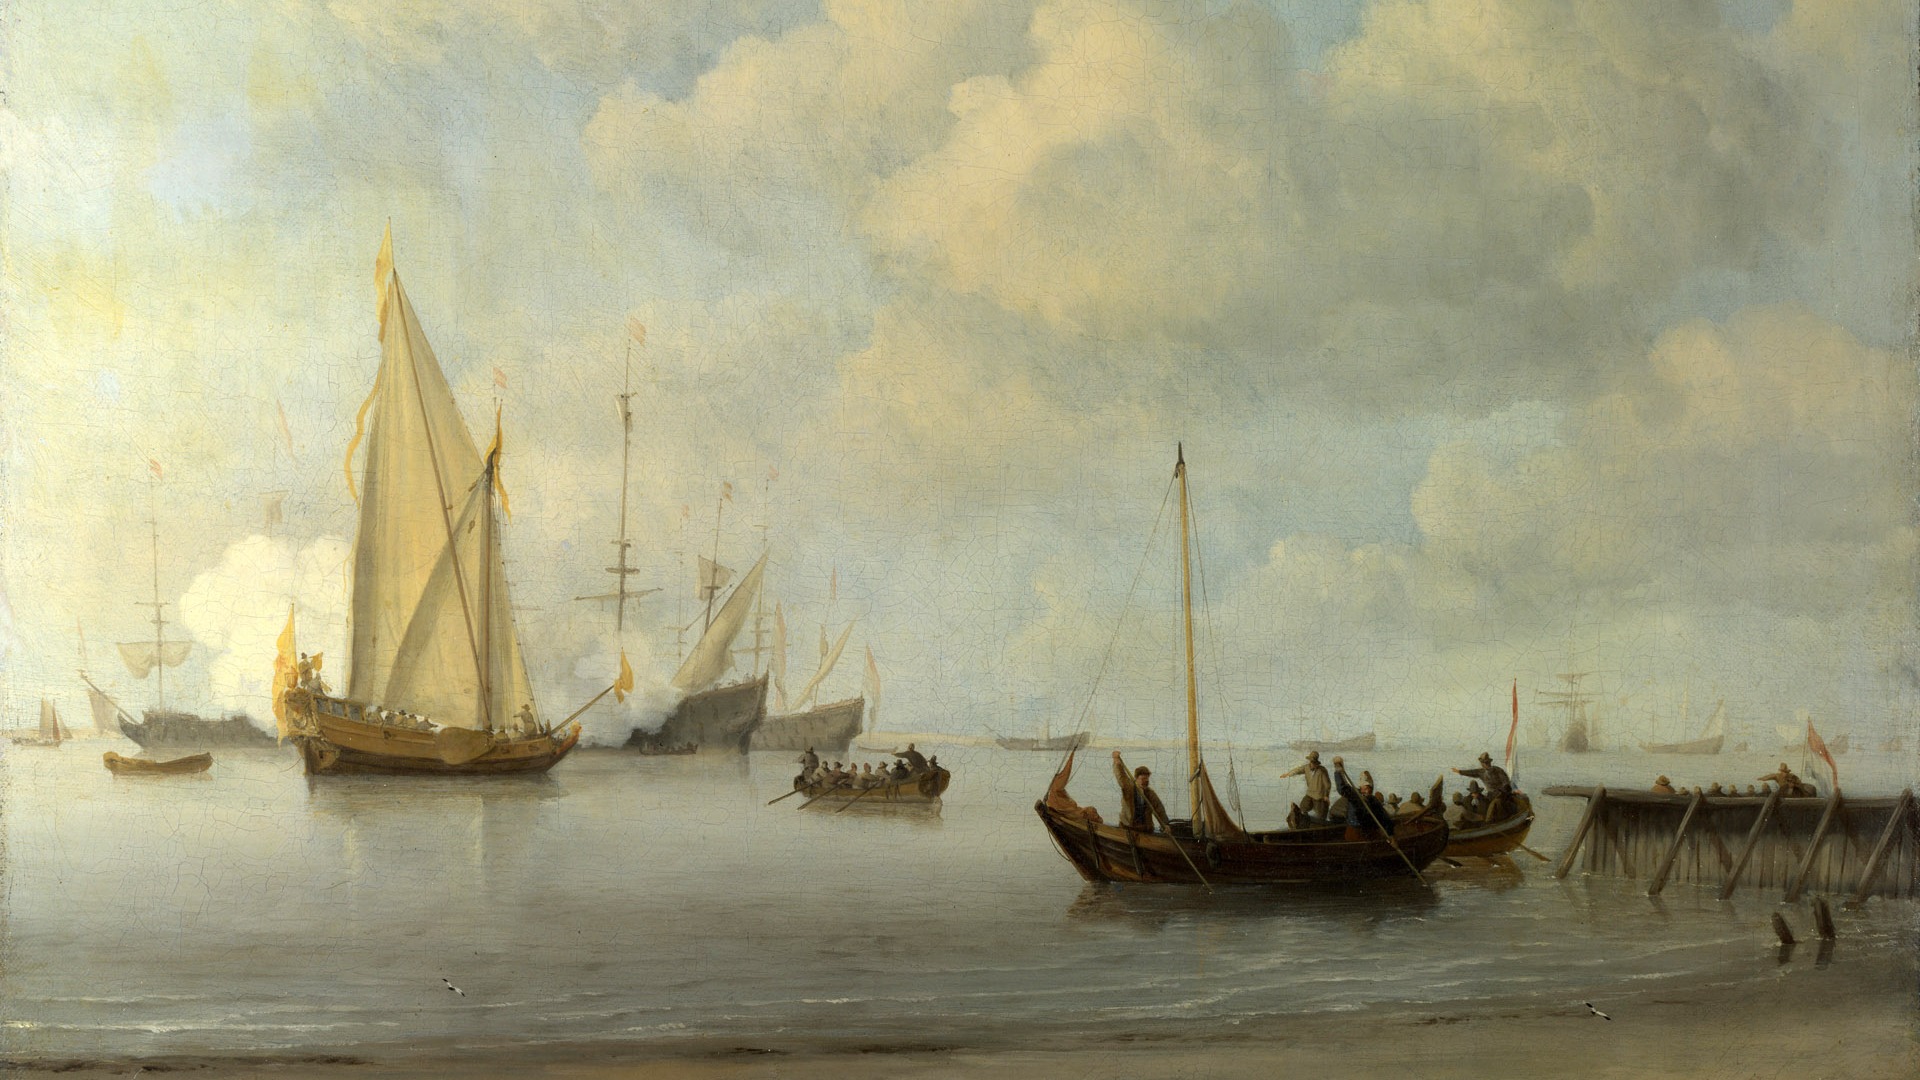 伦敦画廊帆船 壁纸(二)6 - 1920x1080